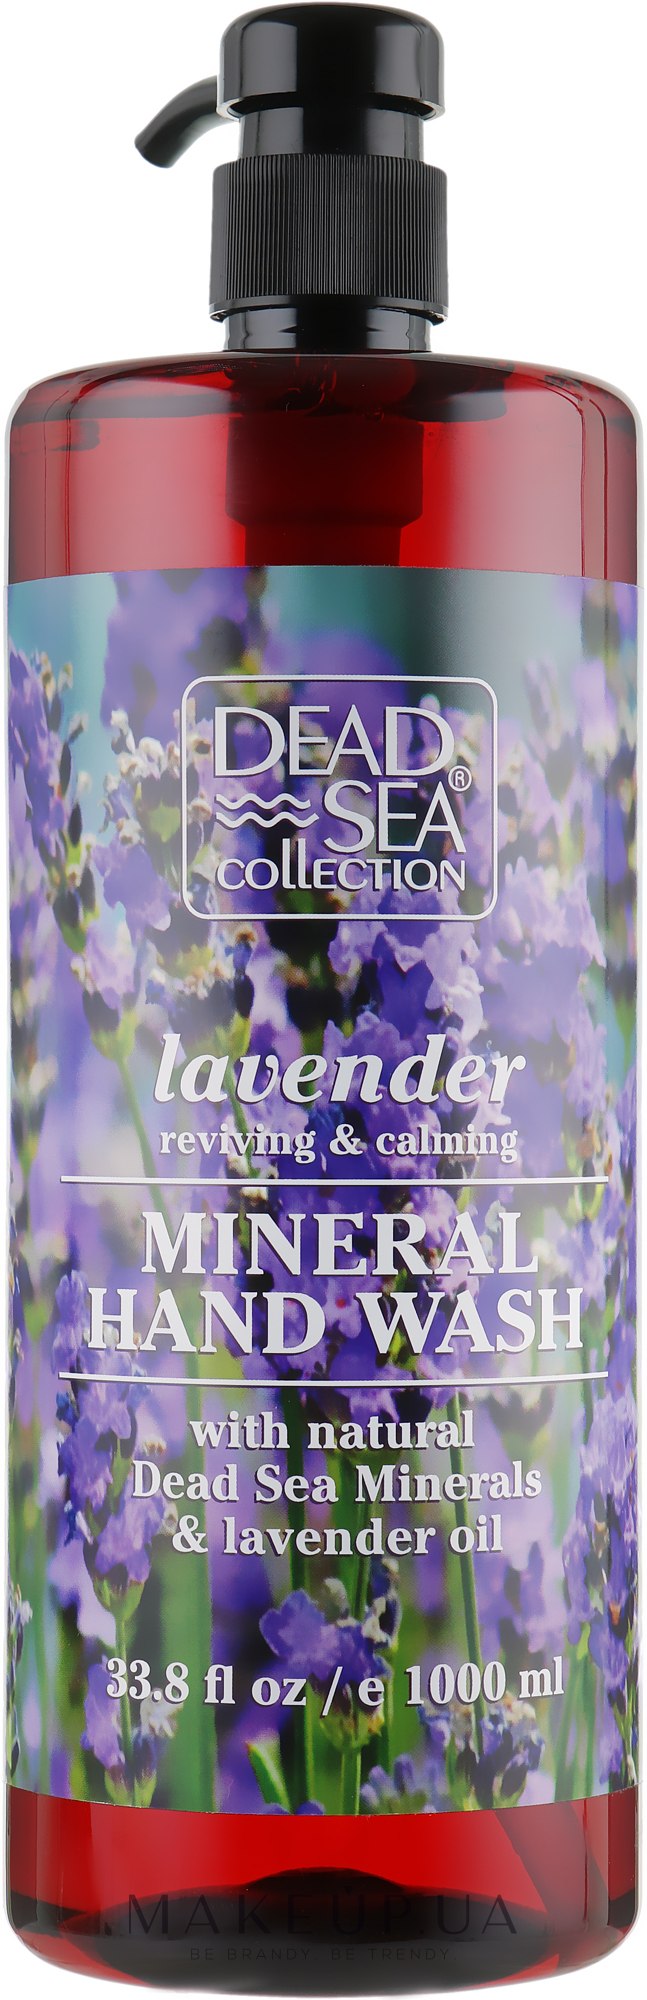 Жидкое мыло с минералами Мертвого моря и маслом лаванды - Dead Sea Collection Lavender Hand Wash with Natural Dead Sea Minerals — фото 1000ml